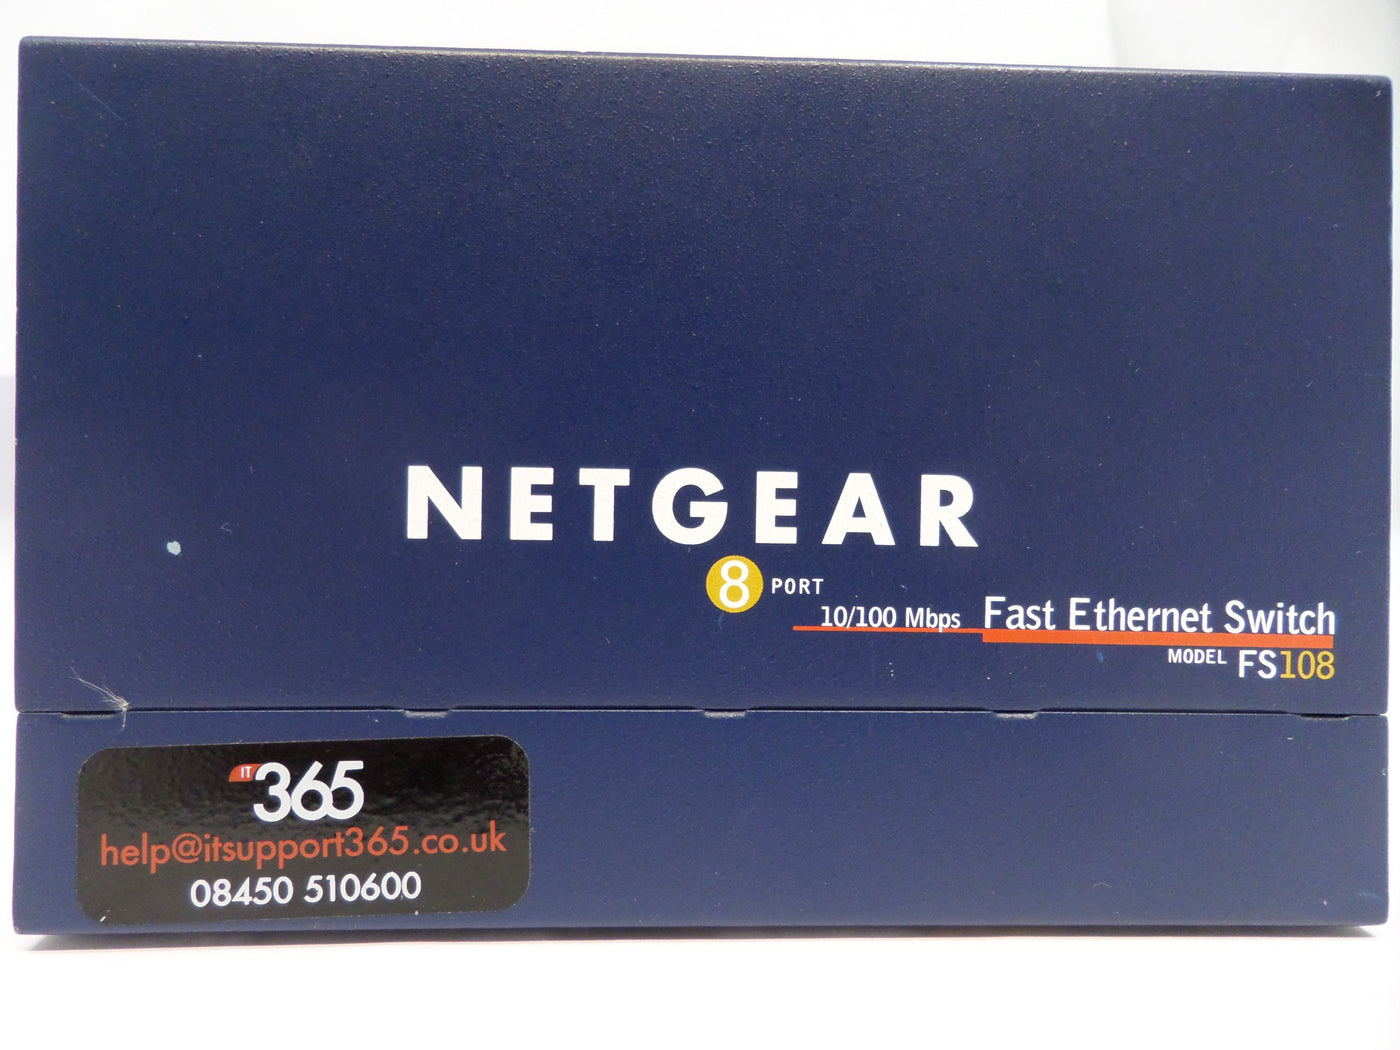 MC3578_FS108_Netgear ProSafe 8 Port 10/100 Switch FS108 v2 - Image4